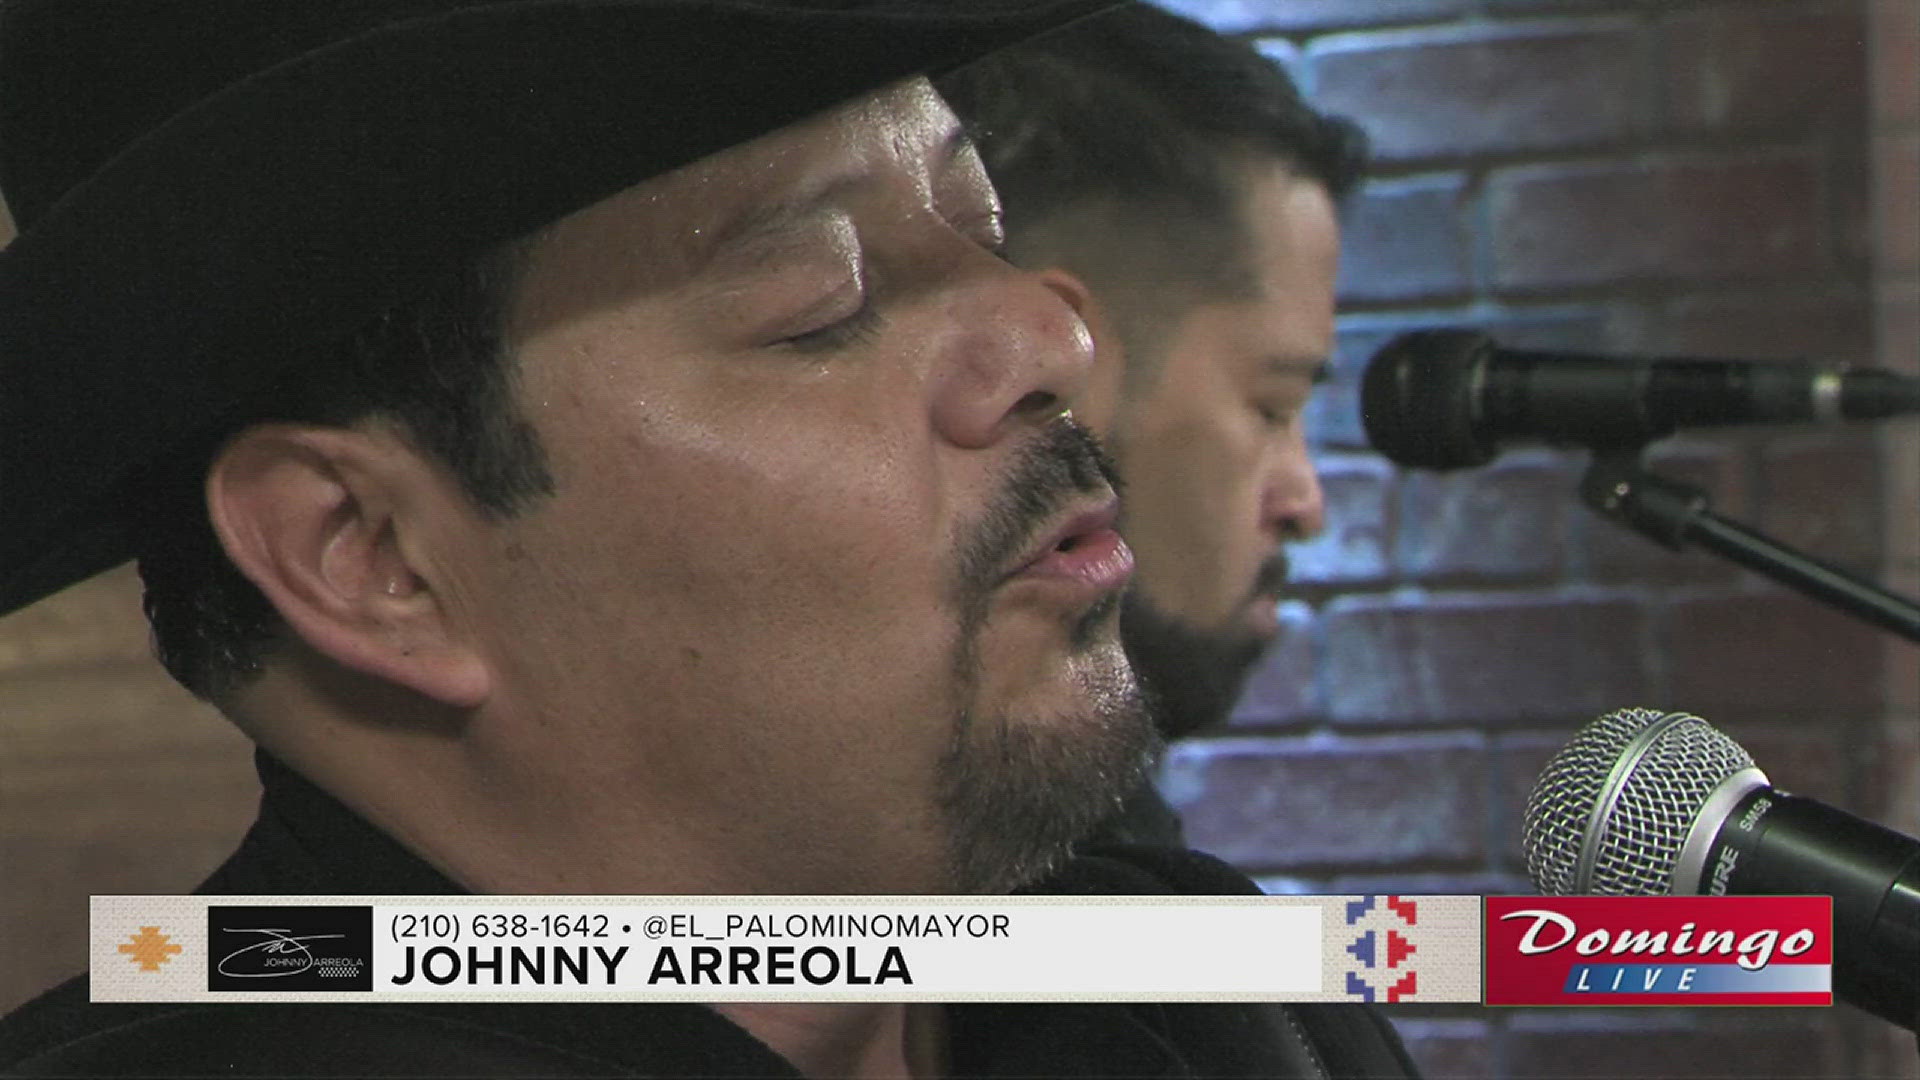 Johnny Arreola, el Palomino Mayor de Los Palominos, joined us on Domingo Live to perform his song "Puedo Imaginarme."